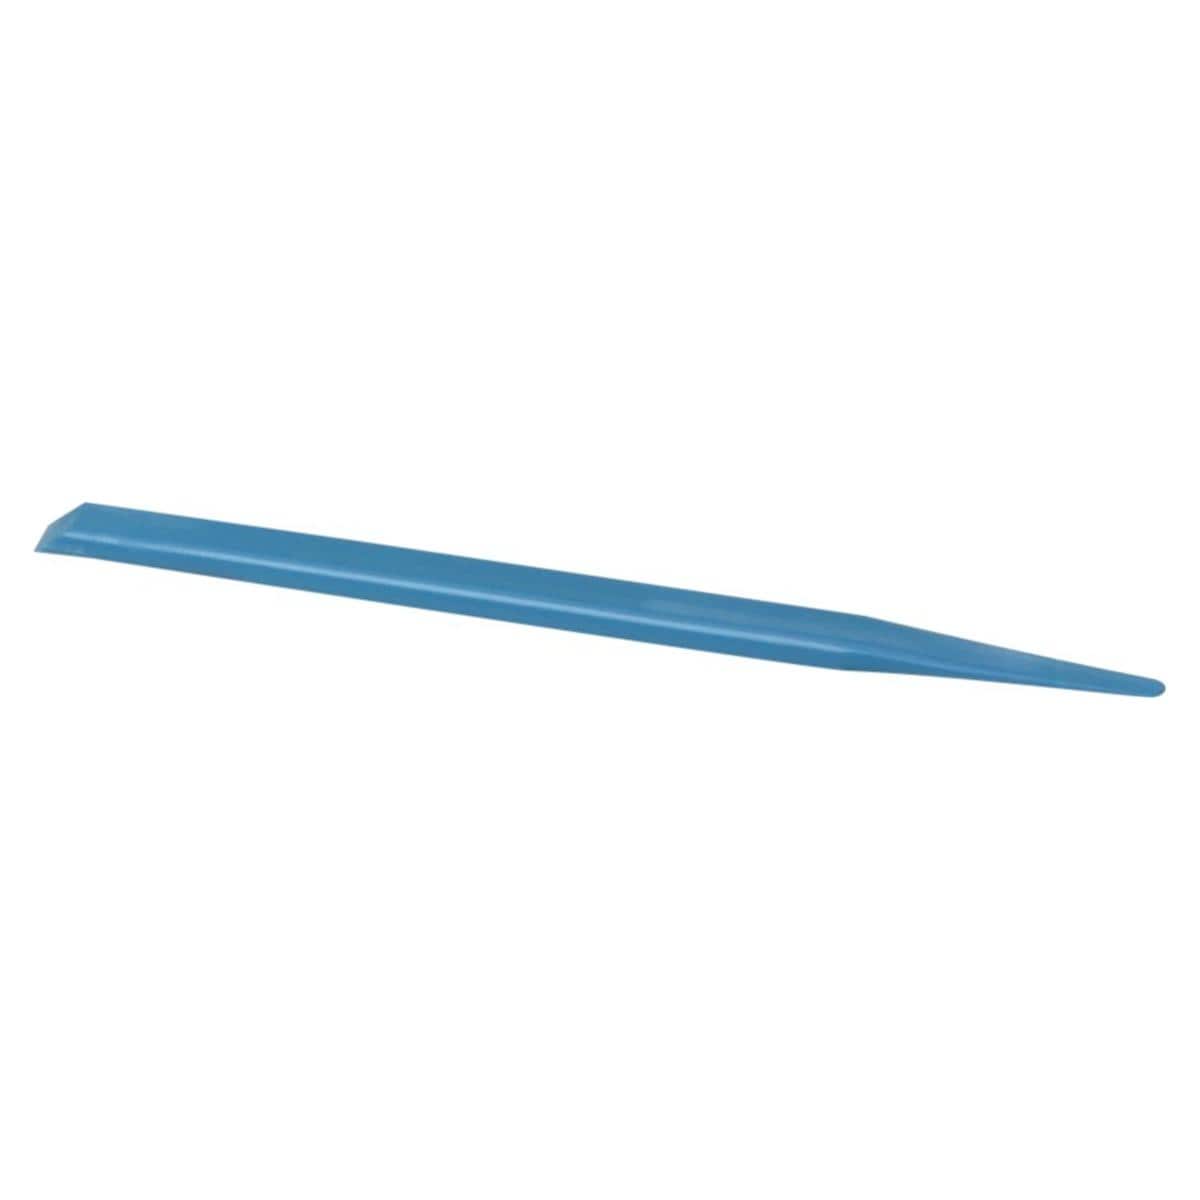 Fuji spatula bleu - Par pice